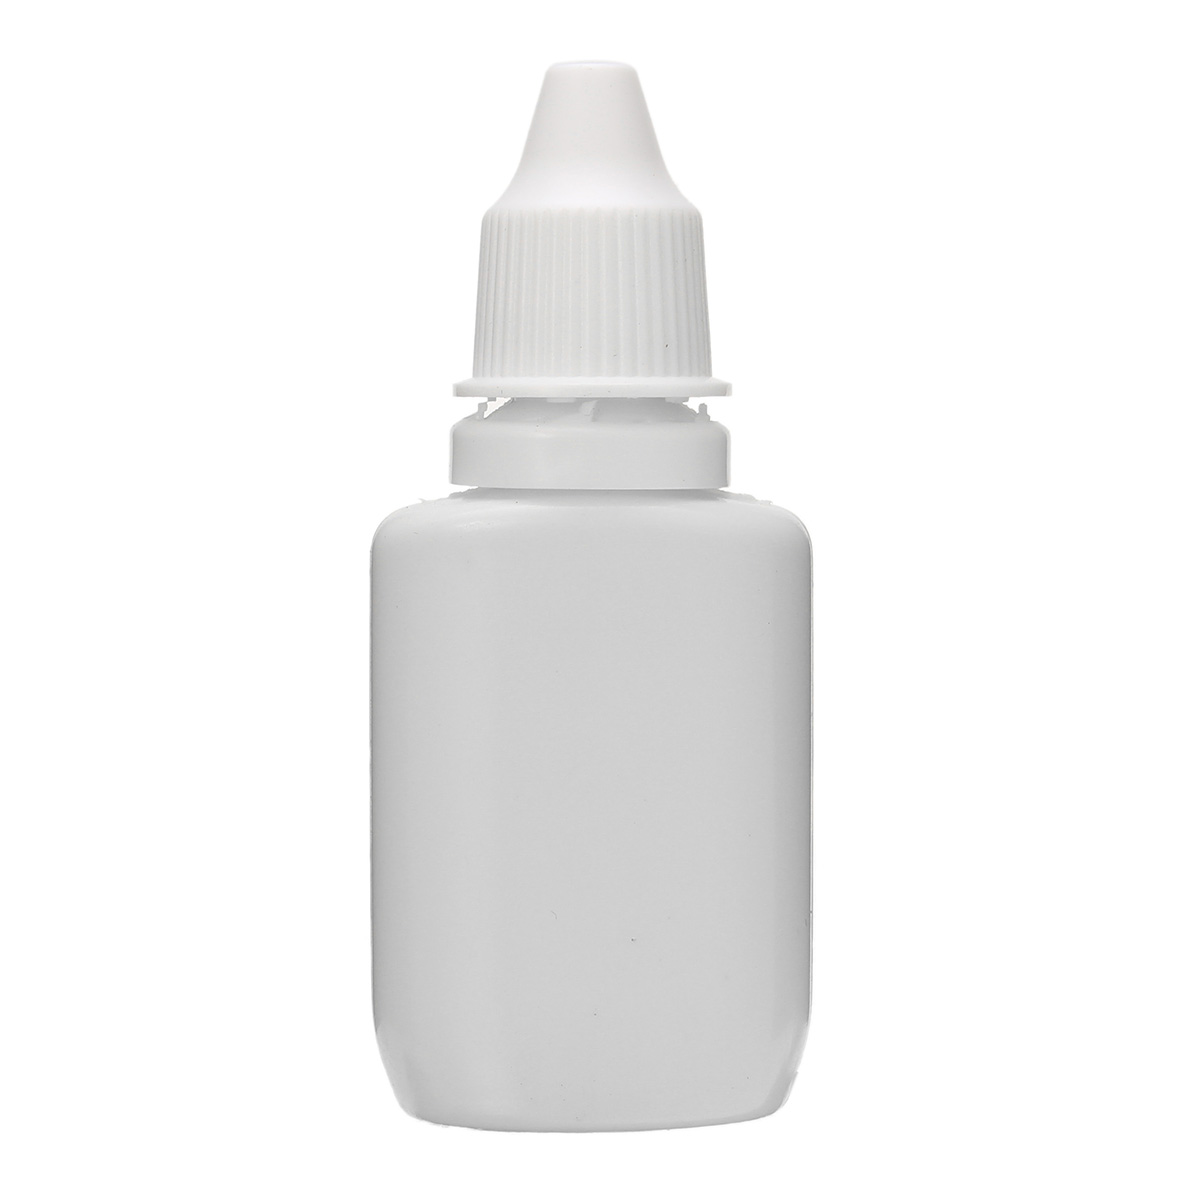 False Eyelash Primer Cleanser Liquid Makeup Cosmetic Tool Long Lasting 10ml